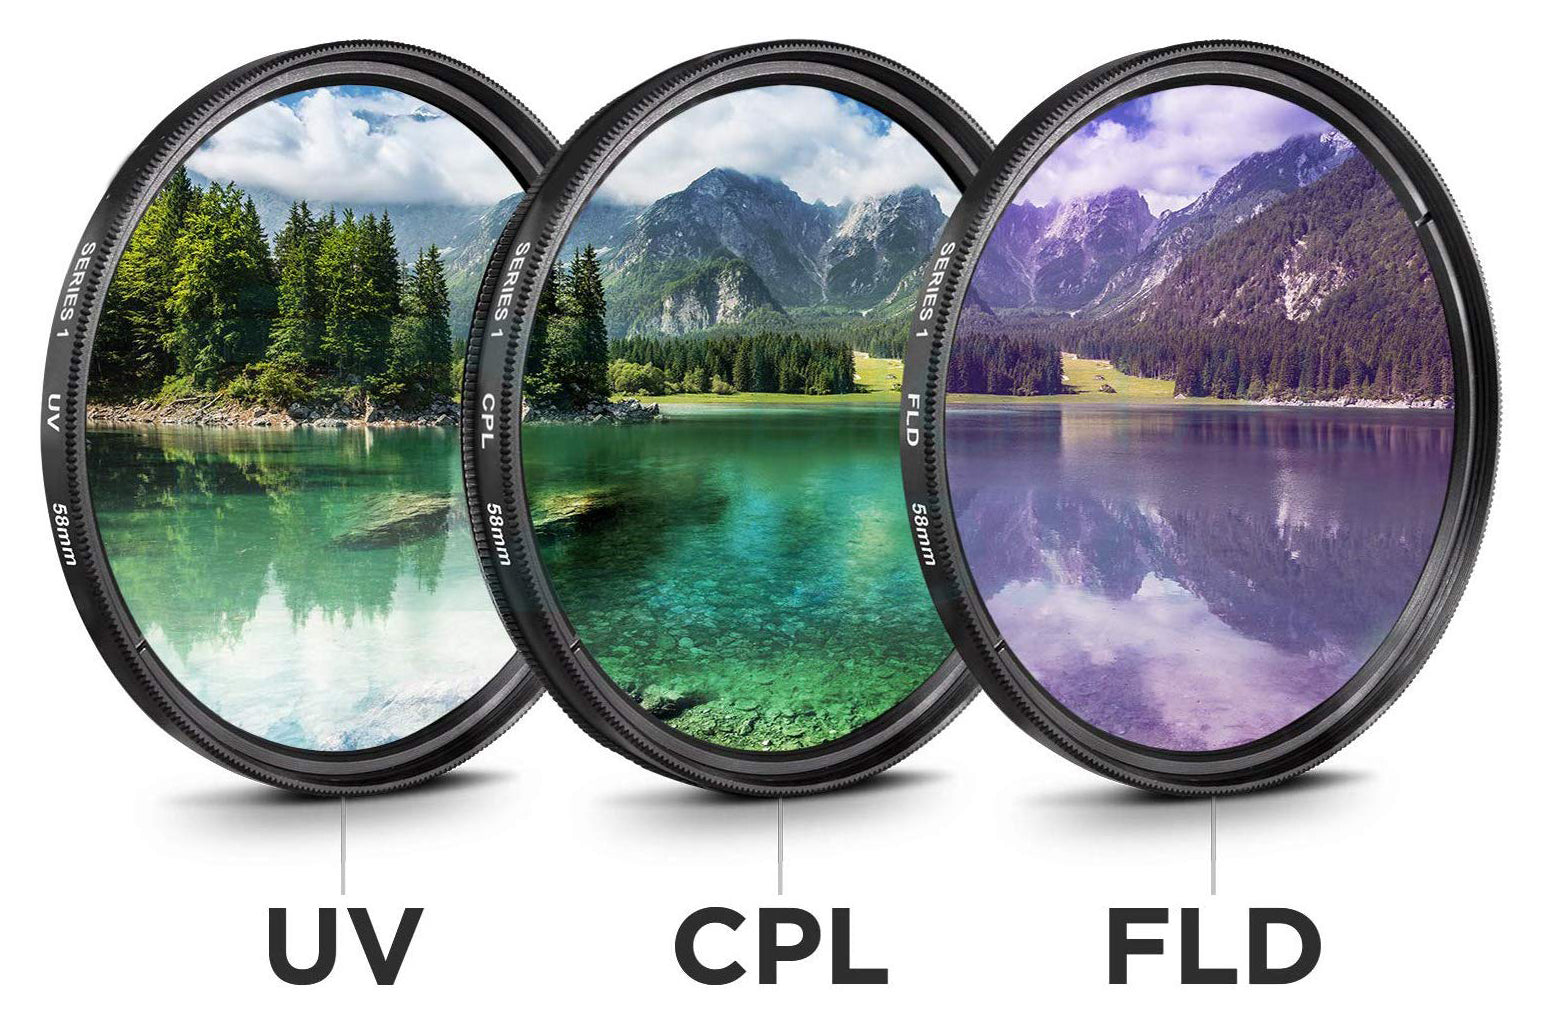 Nikon D7500 DSLR Camera with 18-140mm Lens Bundle   Includes SanDisk 32GB SD Card + 9PC Filter + MORE - International